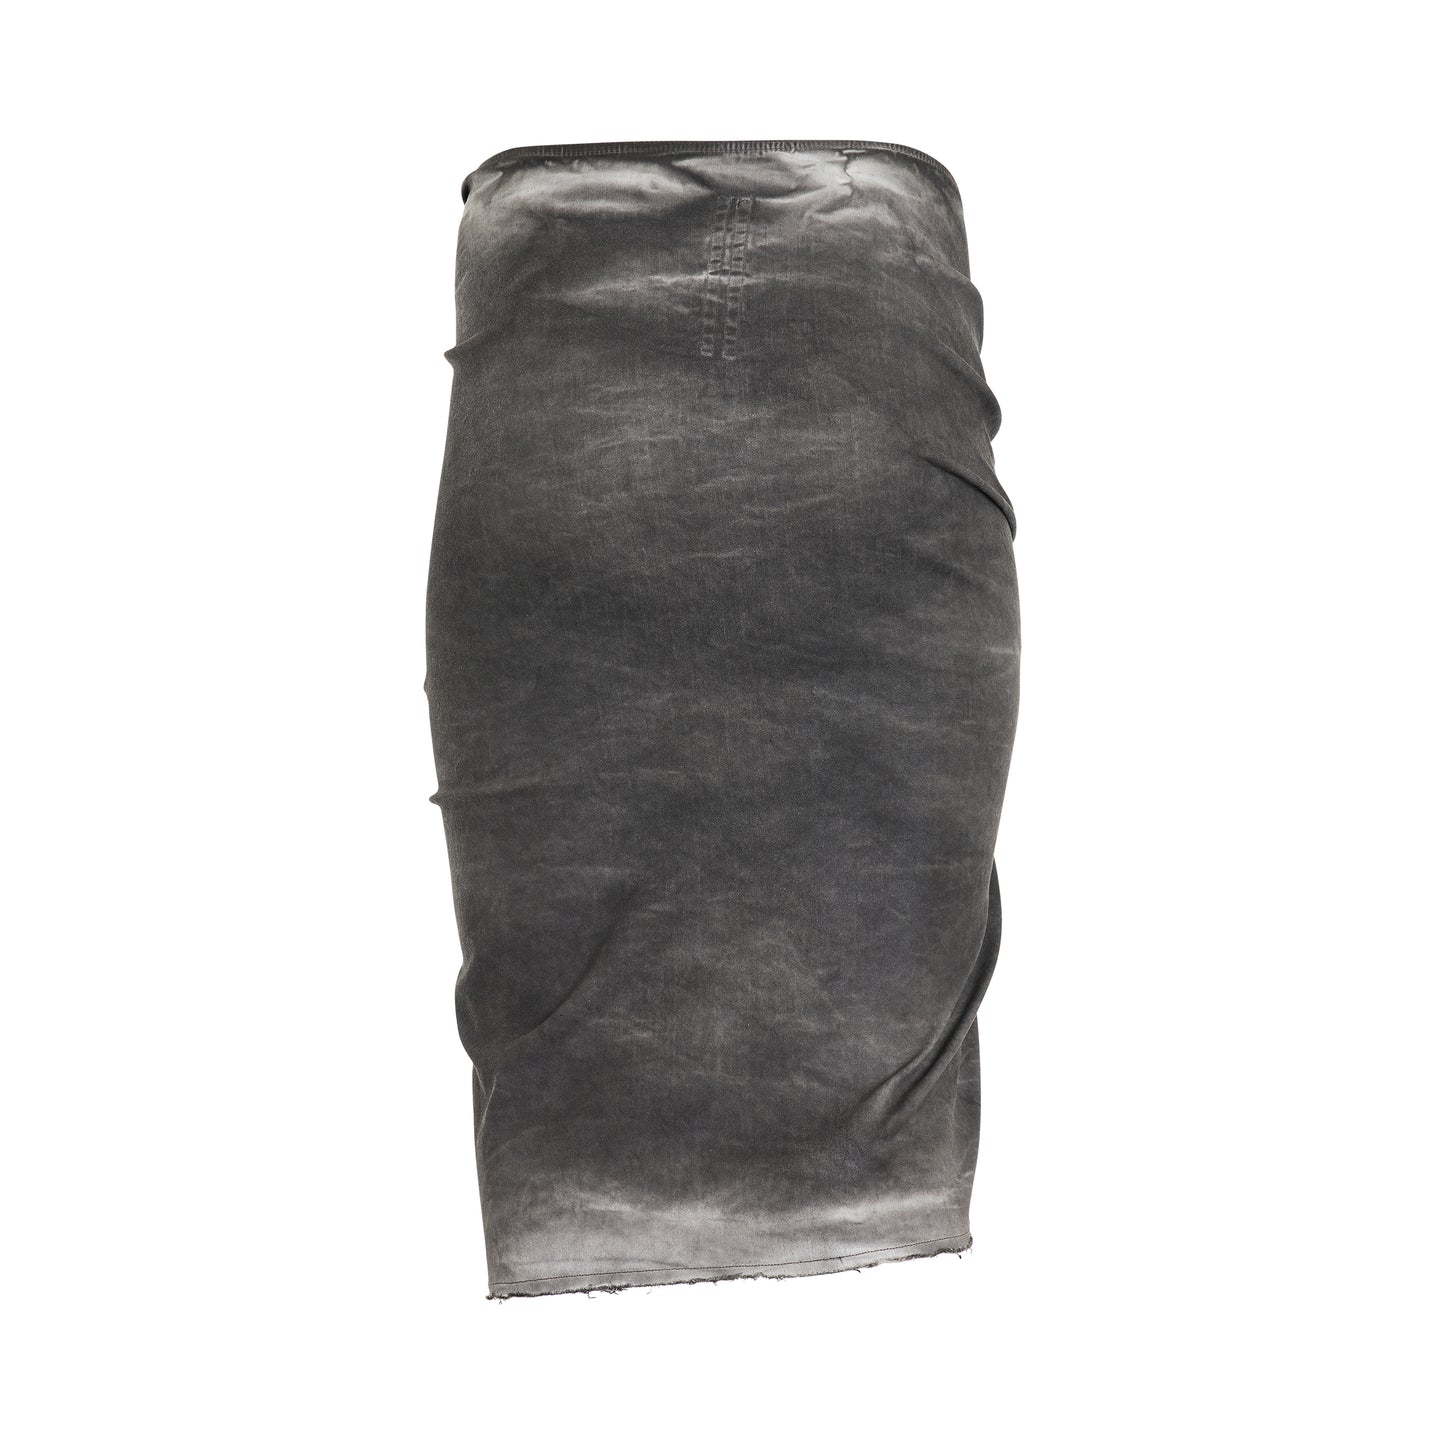 EDFU Knee Skirt in Dark Dust